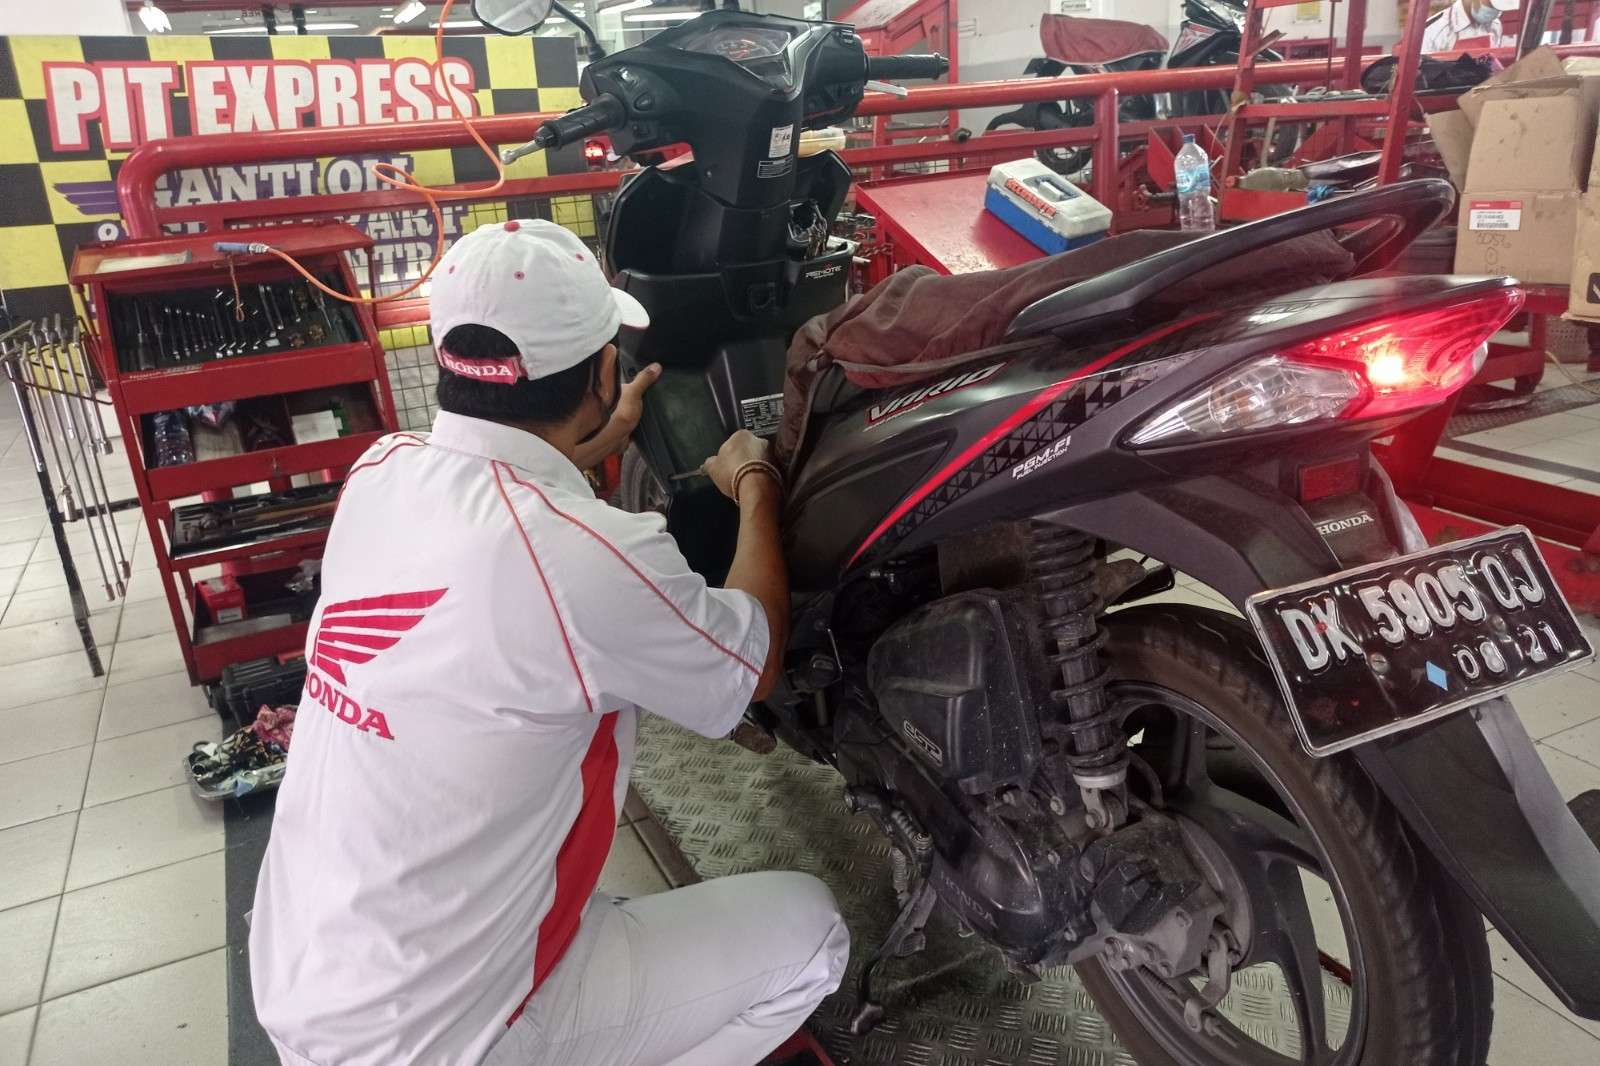 Lebaran ke kampung Halaman, AHASS Area Bali Siapkan Voucher Servis Motor Pemudik